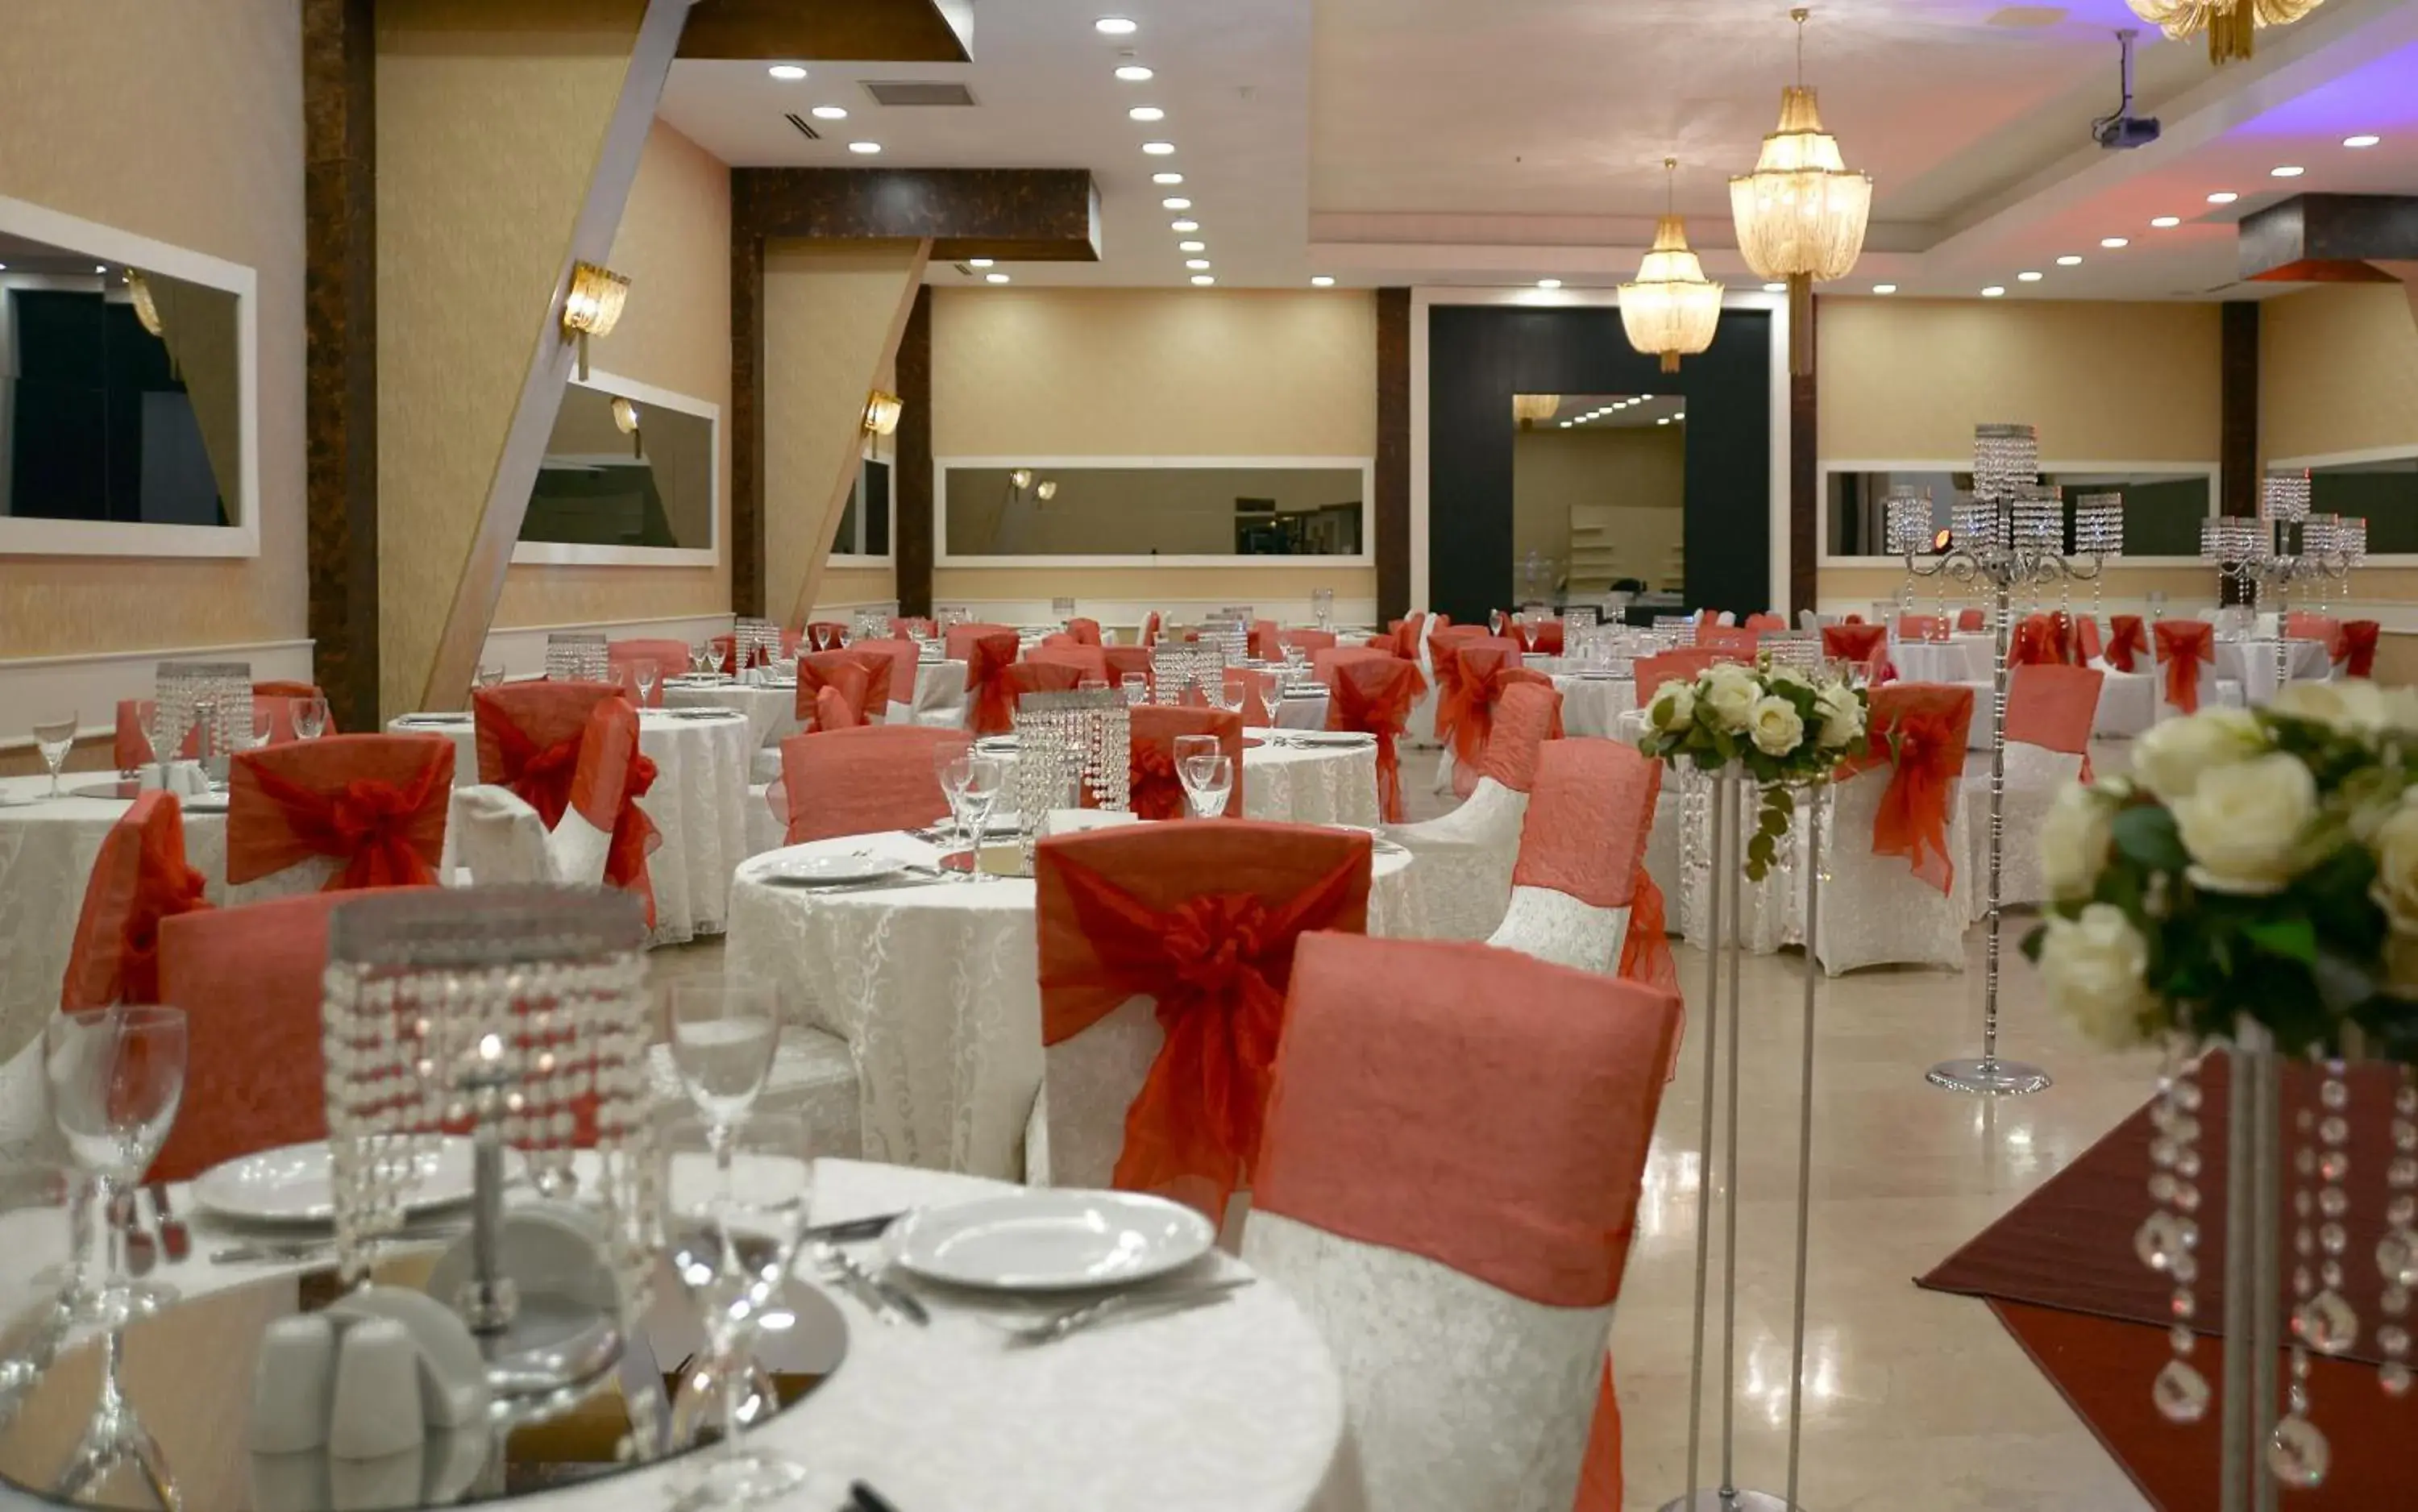 Banquet/Function facilities, Banquet Facilities in Esila Hotel